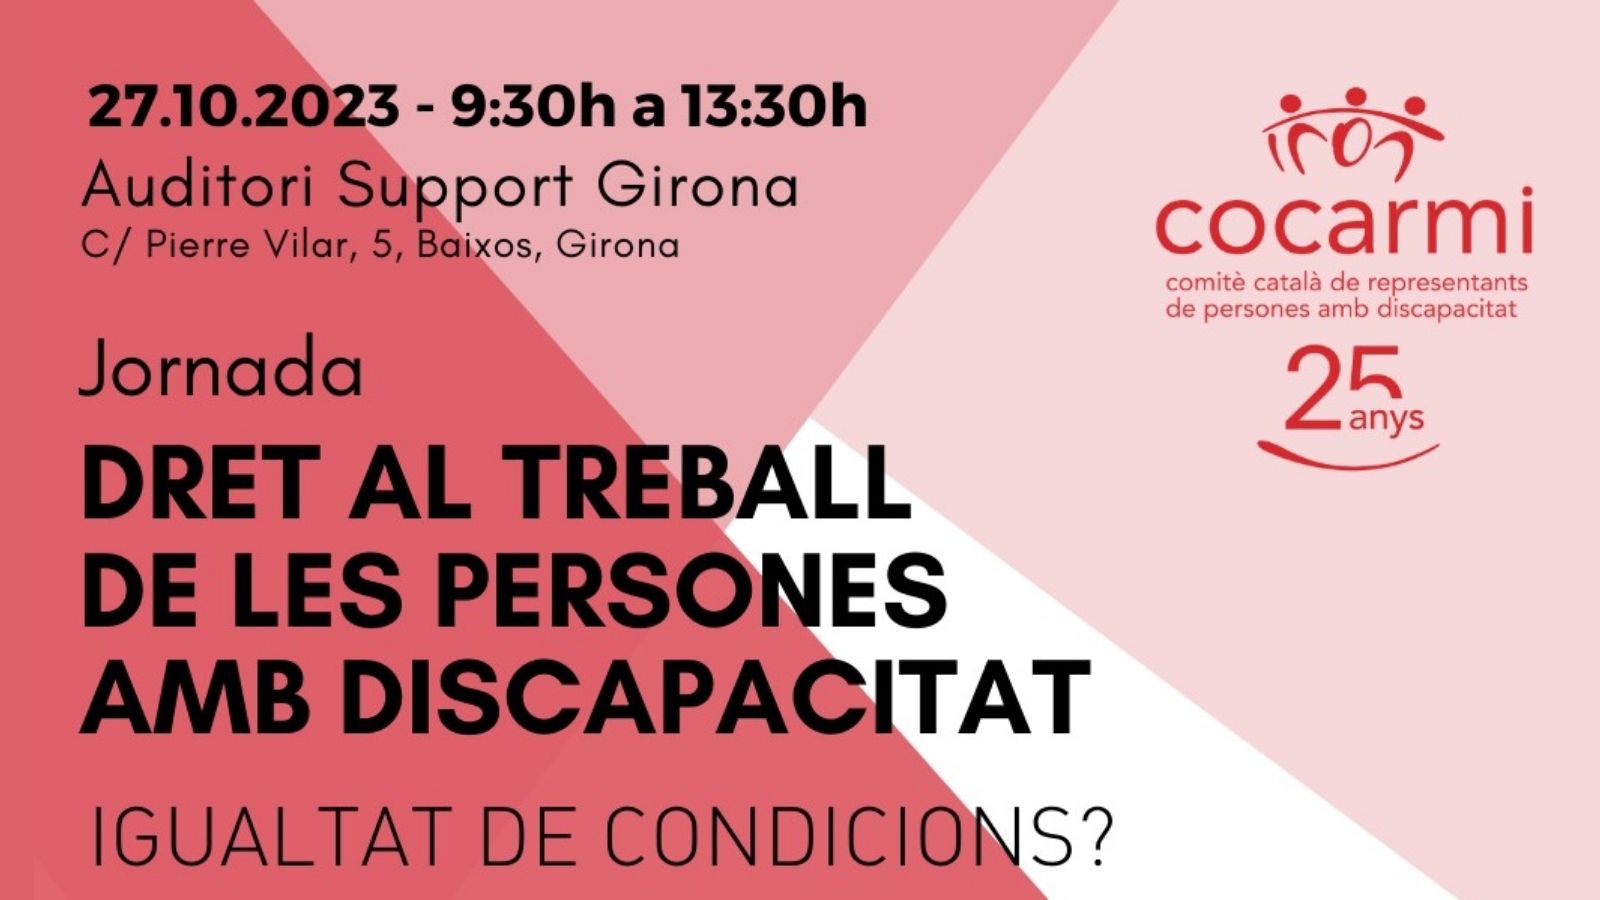 El dret al treball de les persones amb discapacitat, a debat en una jornada del COCARMI el 27 d’octubre a Girona